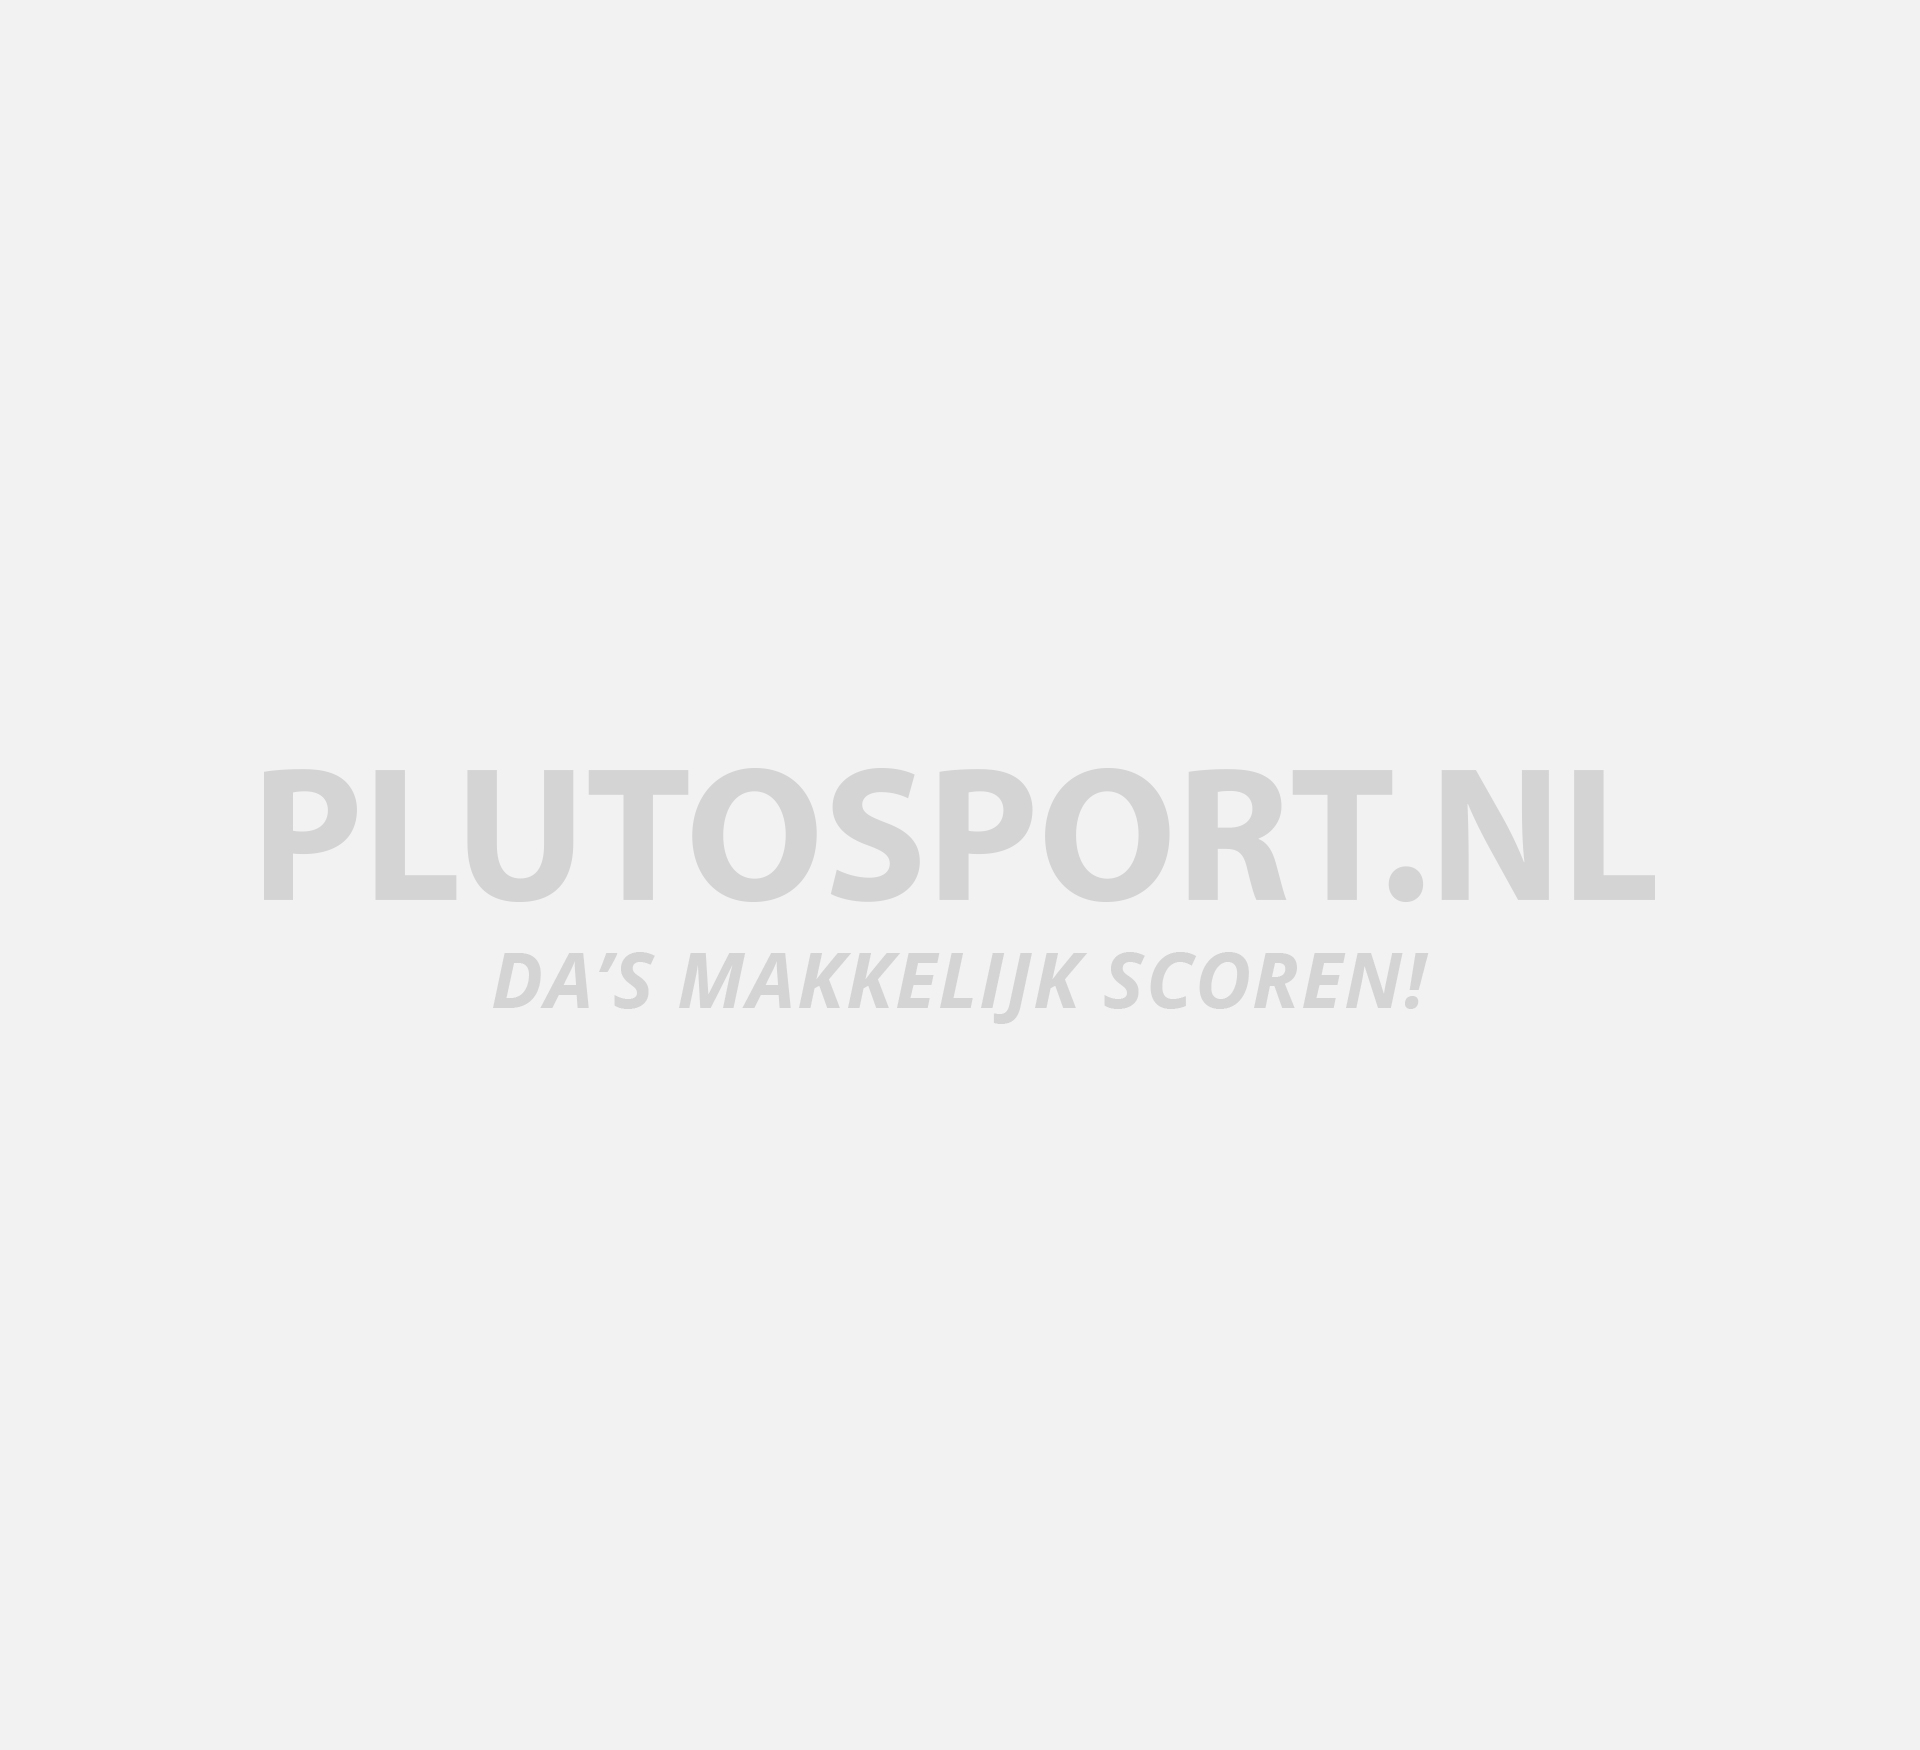 Frons Door verteren Jassen voor heren kopen? Alle topmerken! | Plutosport